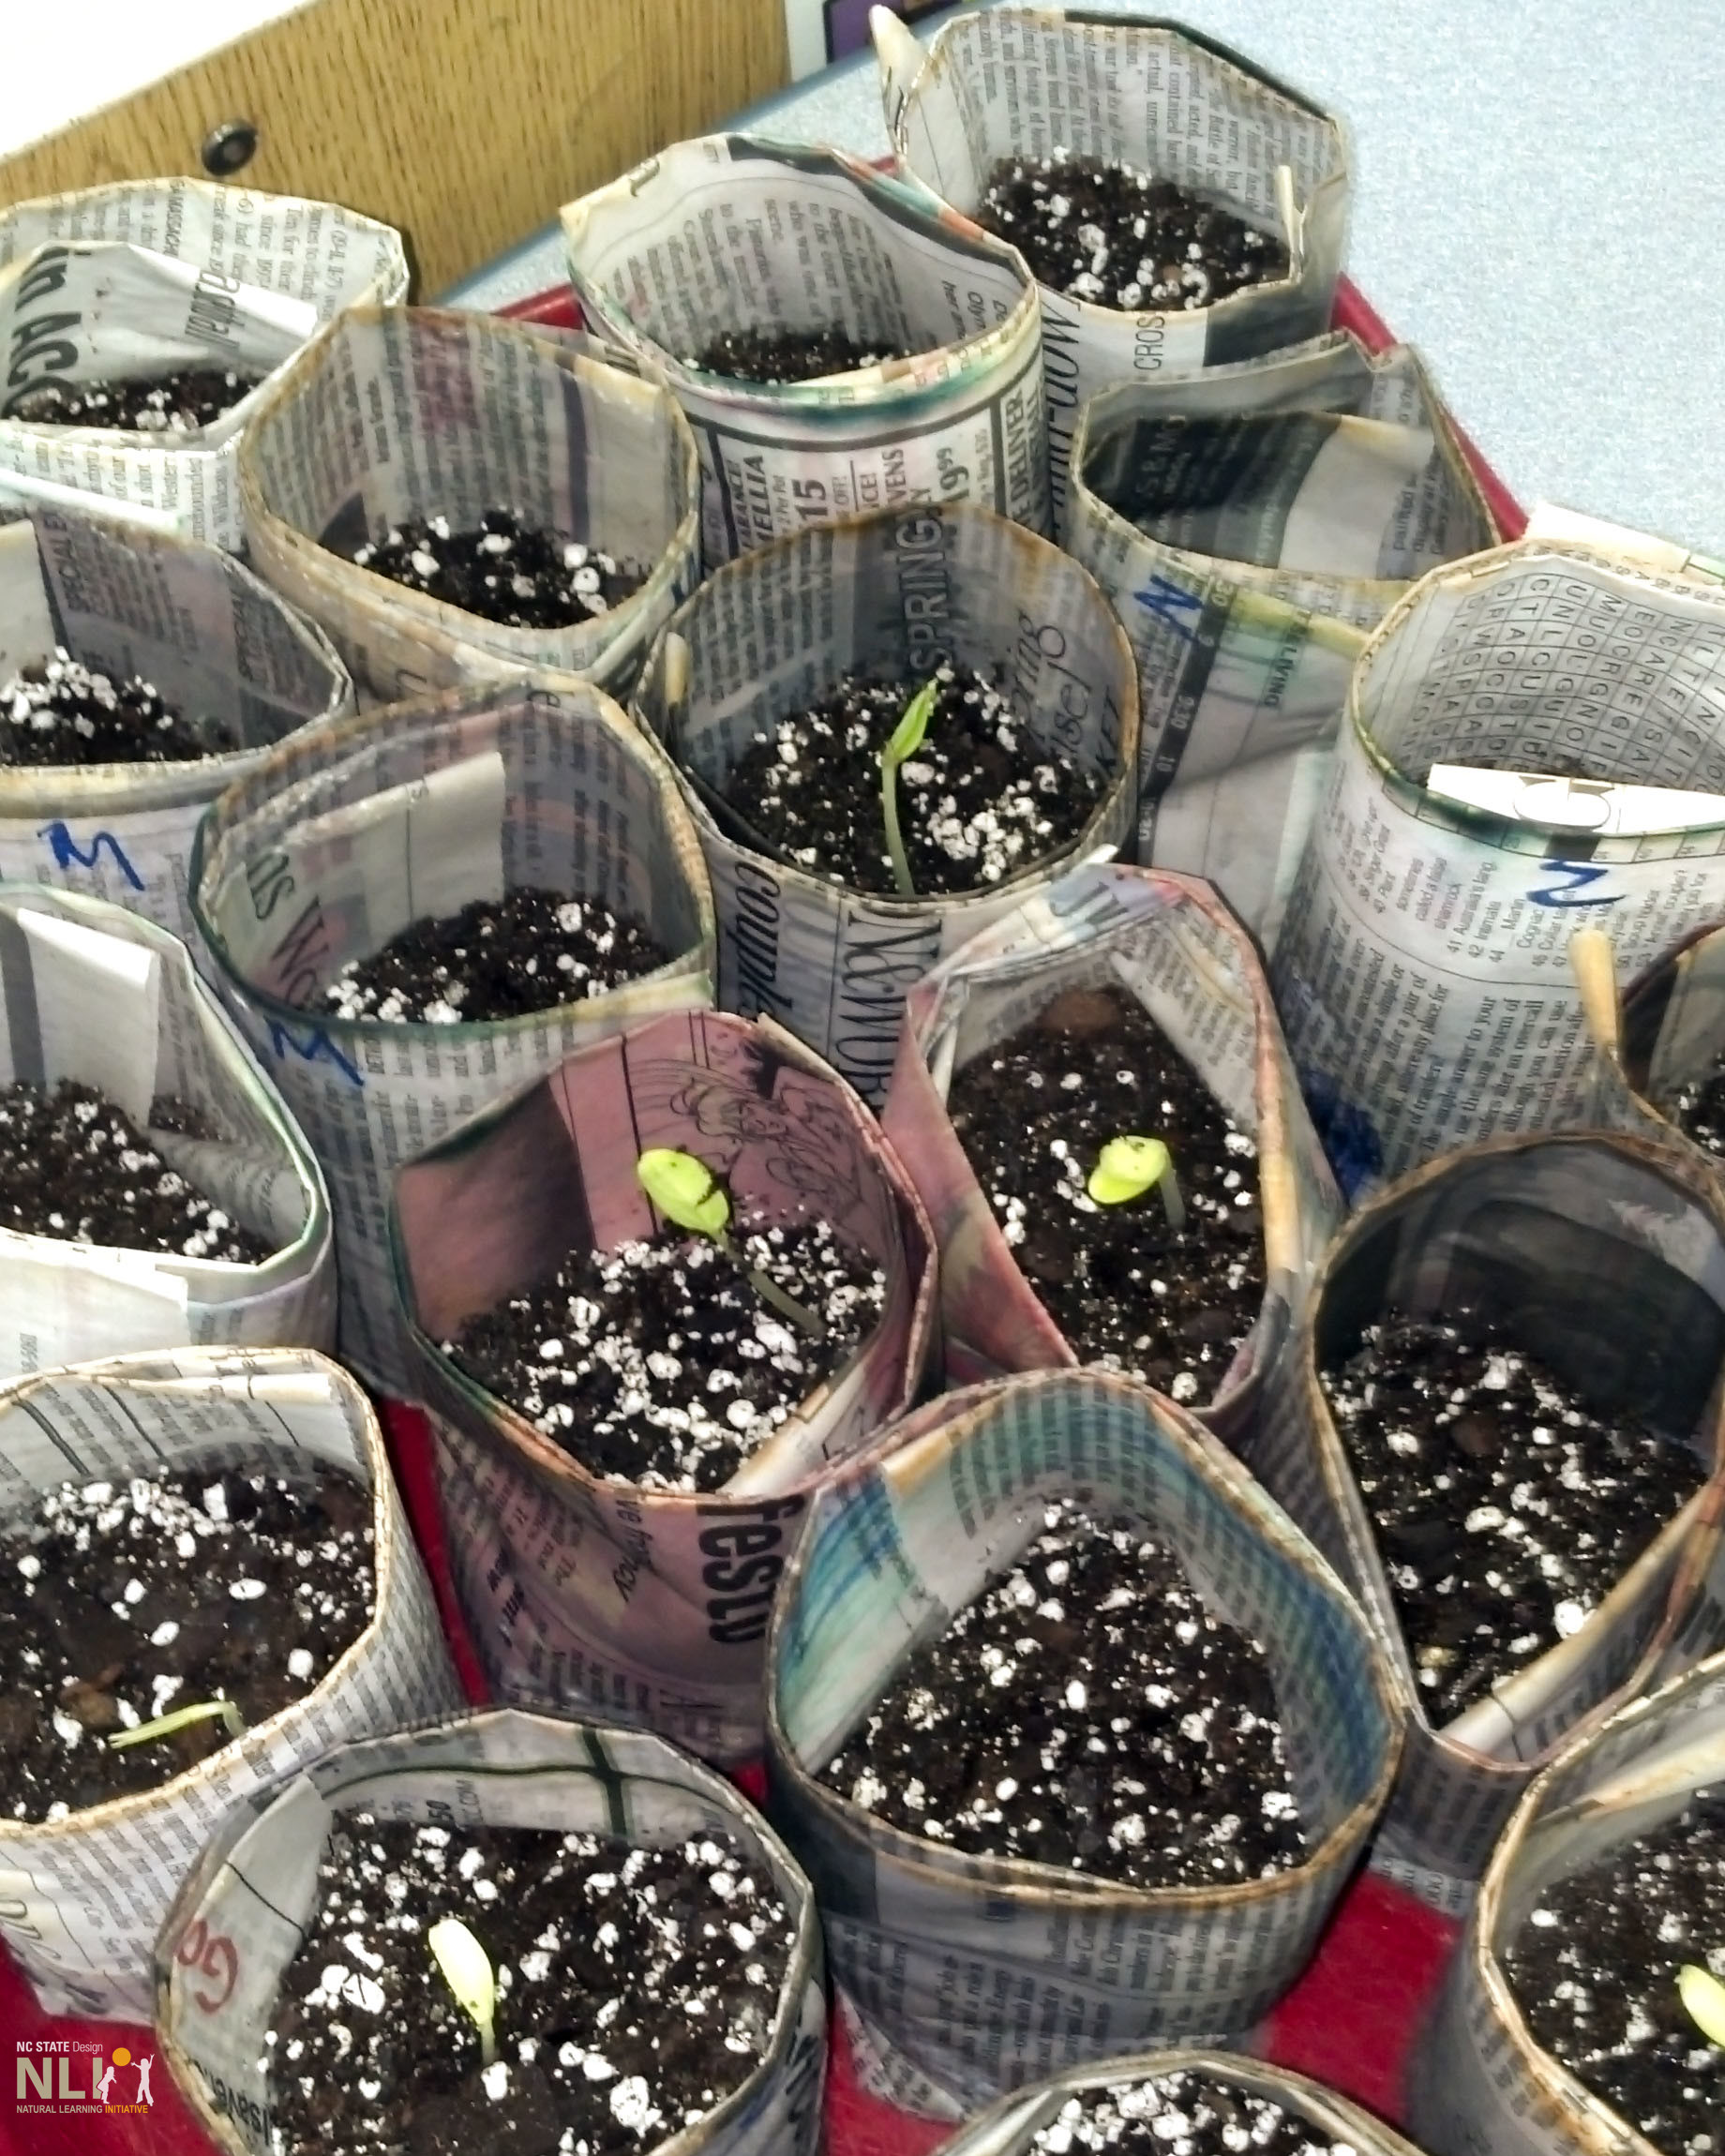 seedlings growing in newspaper pots